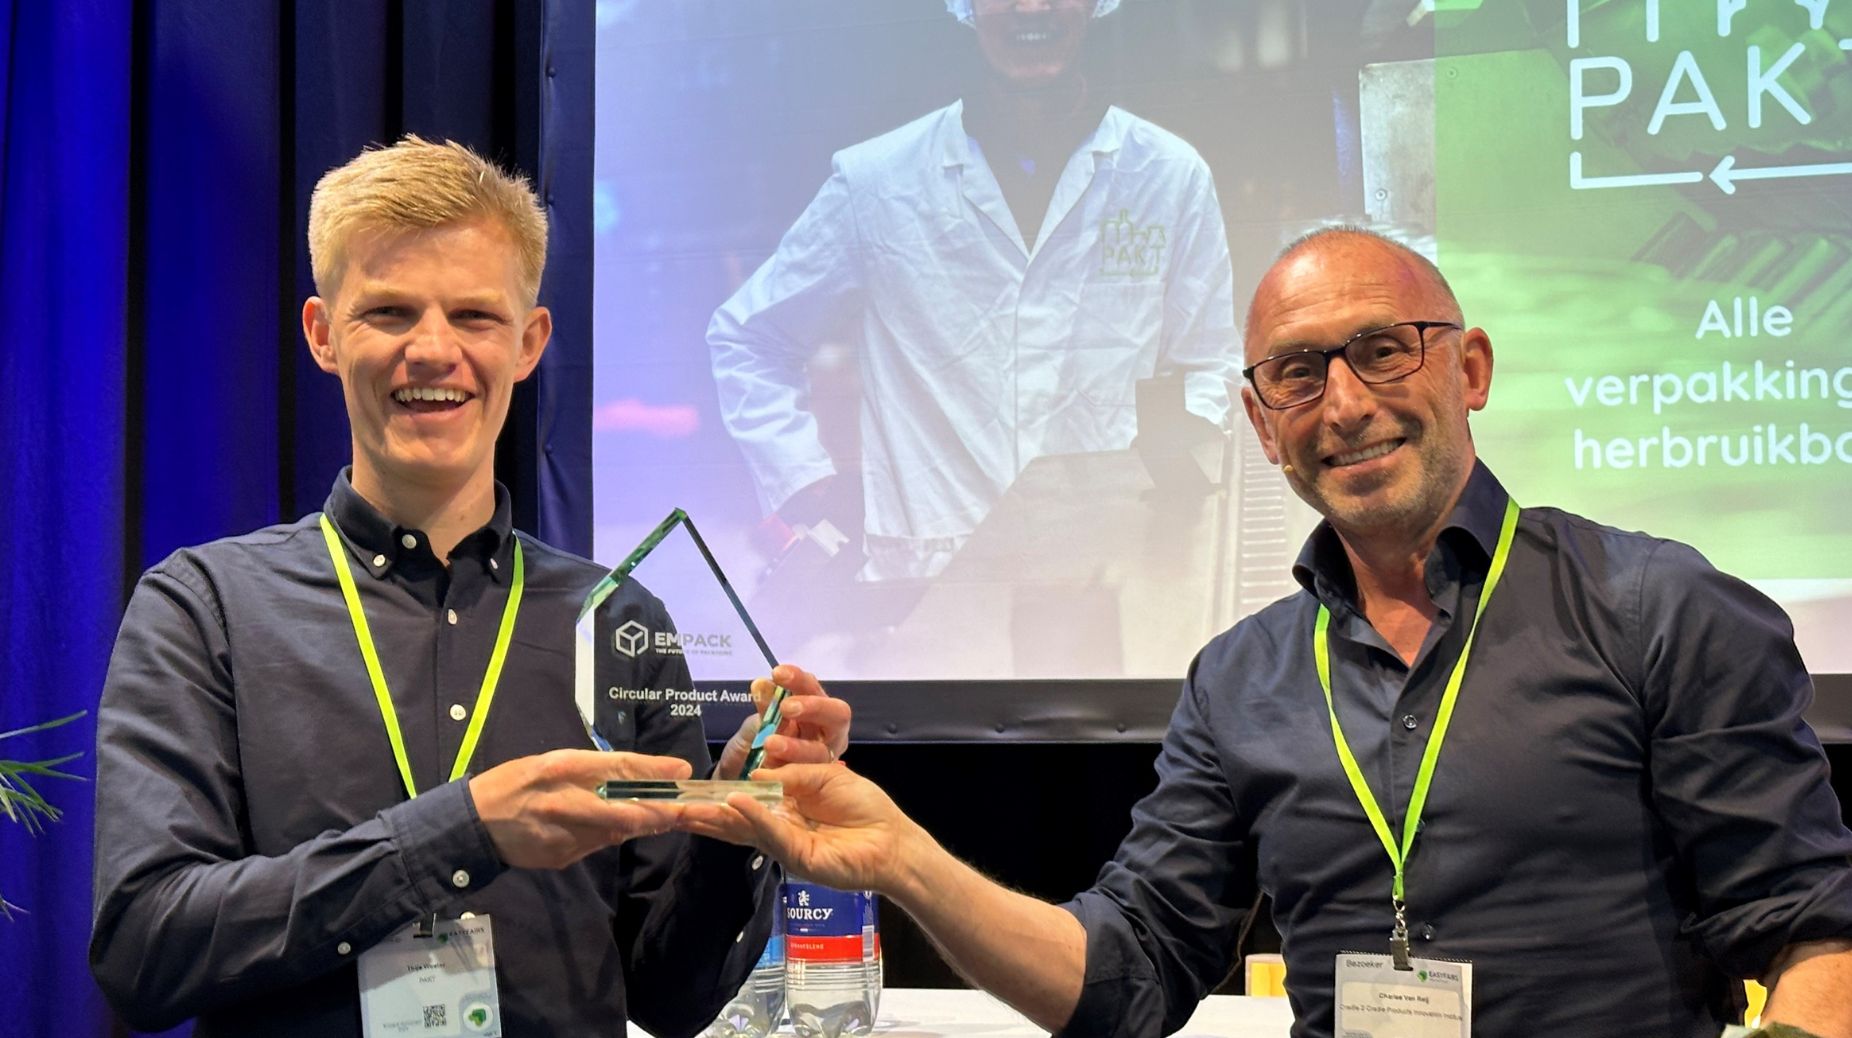 Thijs Wester van PAKT heeft de Circular Product Award gewonnen met zijn retoursysteem voor glazen verpakkingen.